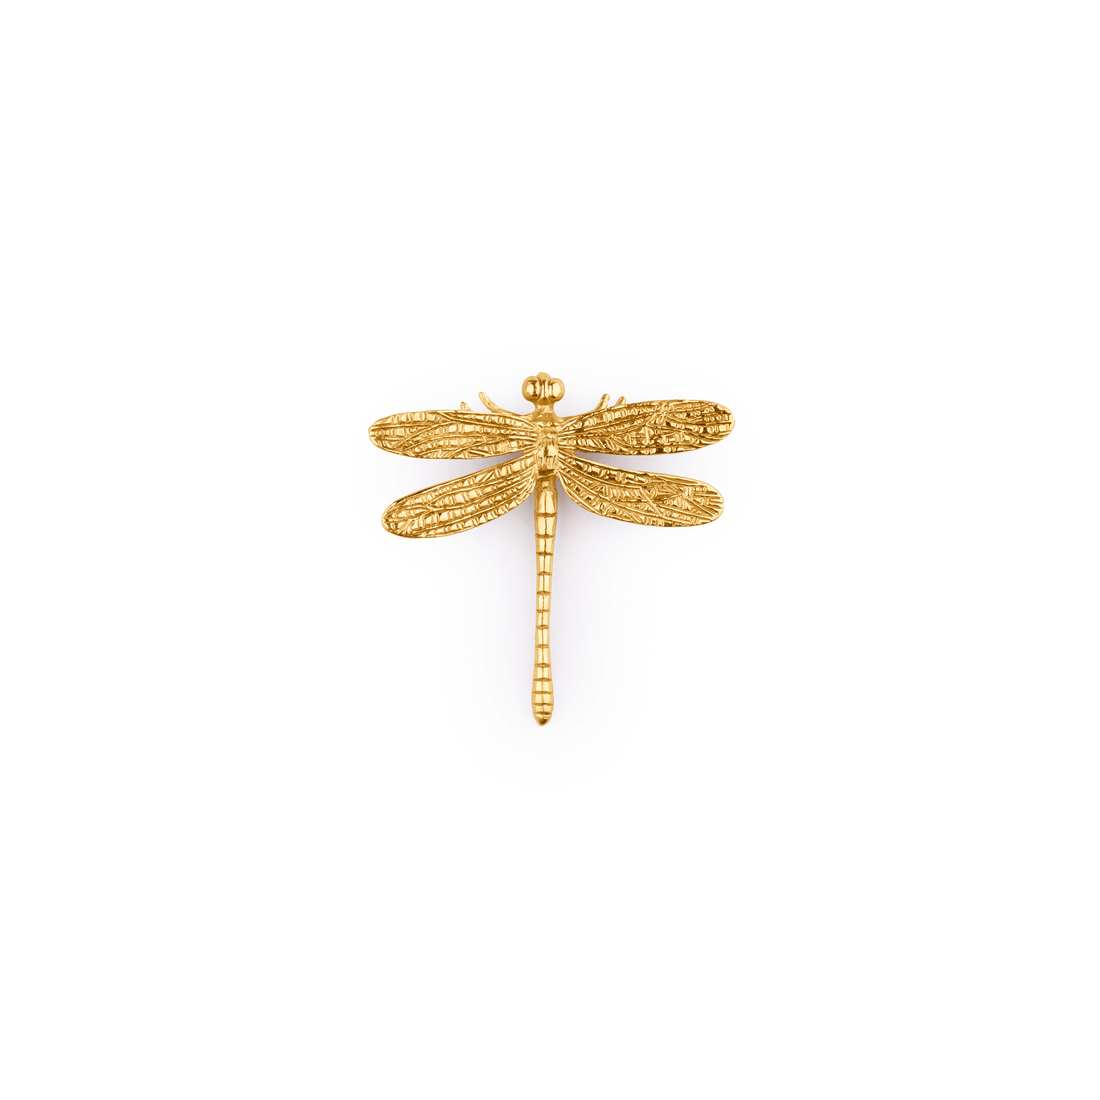 Dragonfly Knob Knob 81mm / Gold / Brass - M A N T A R A